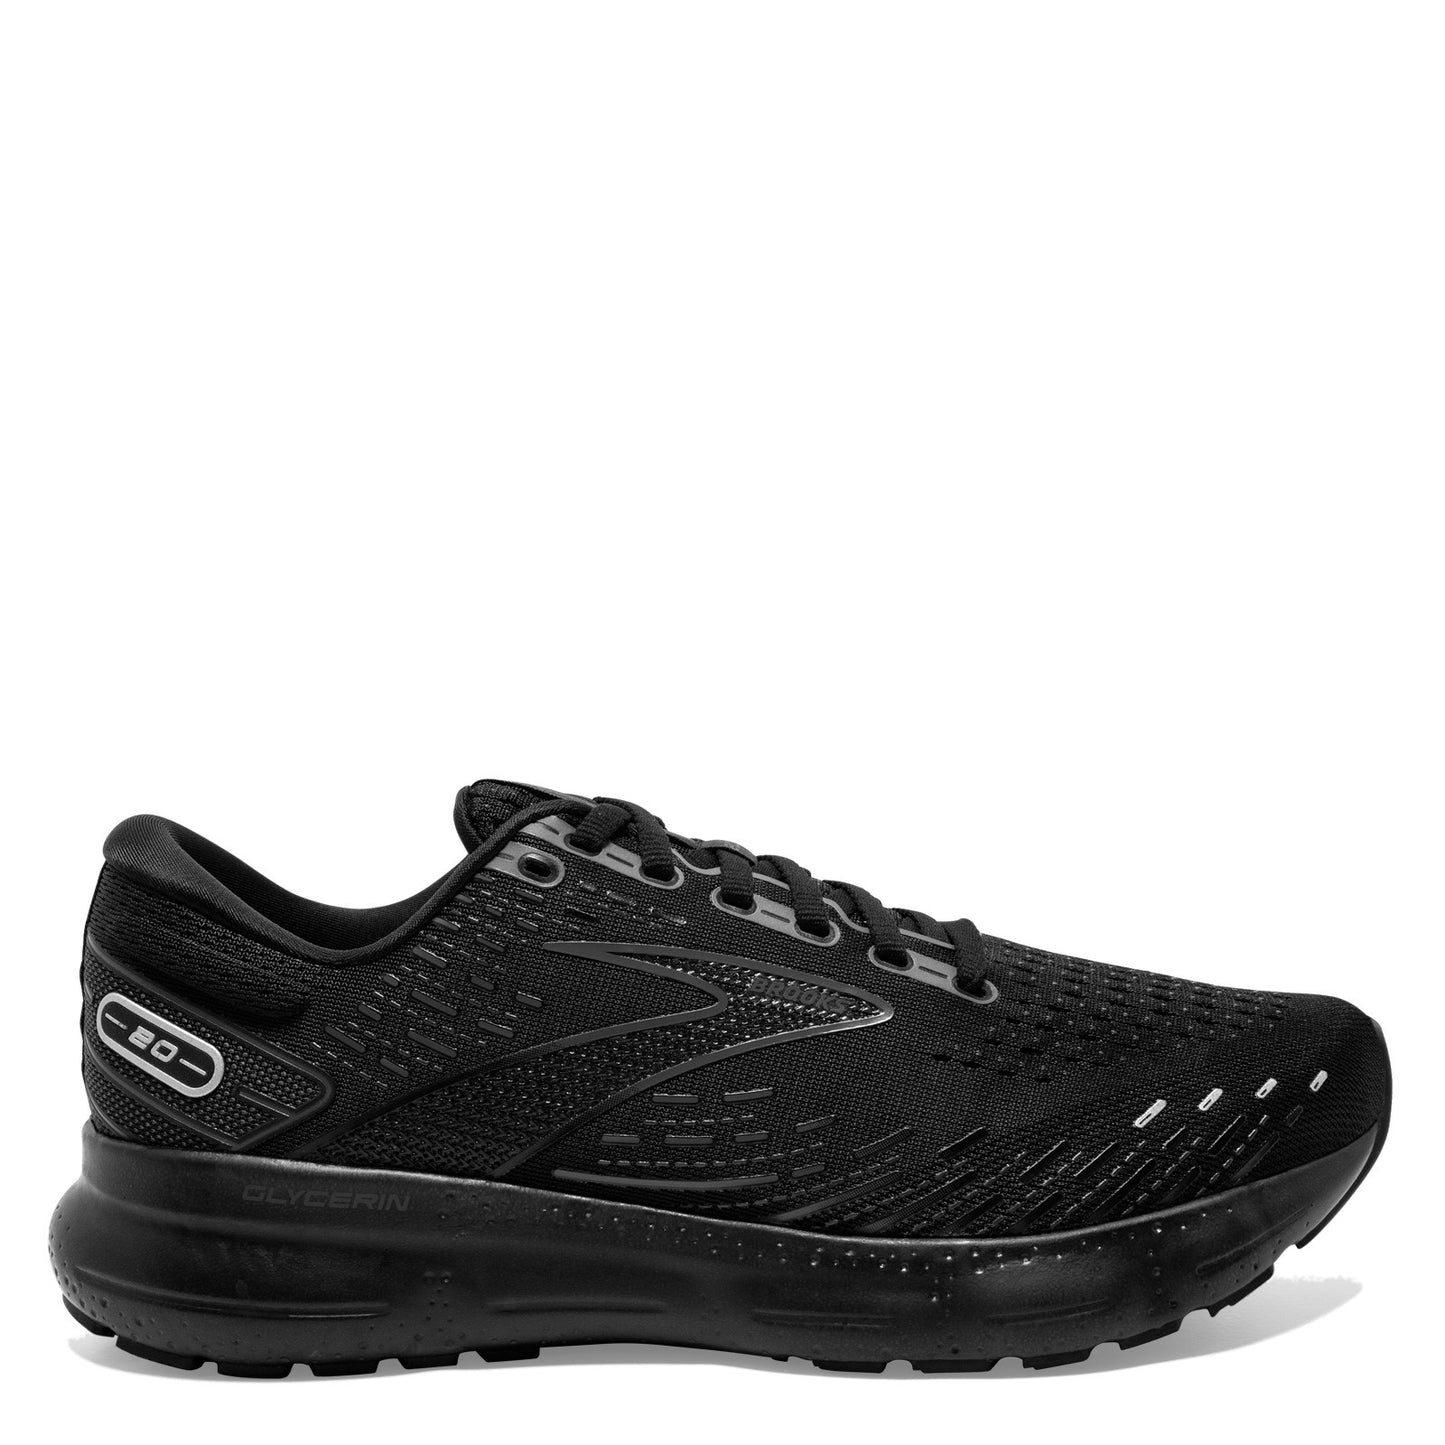 Peltz Shoes  Women's Brooks Glycerin 20 Running Shoe Black/Black/Ebony 120369 1B 020